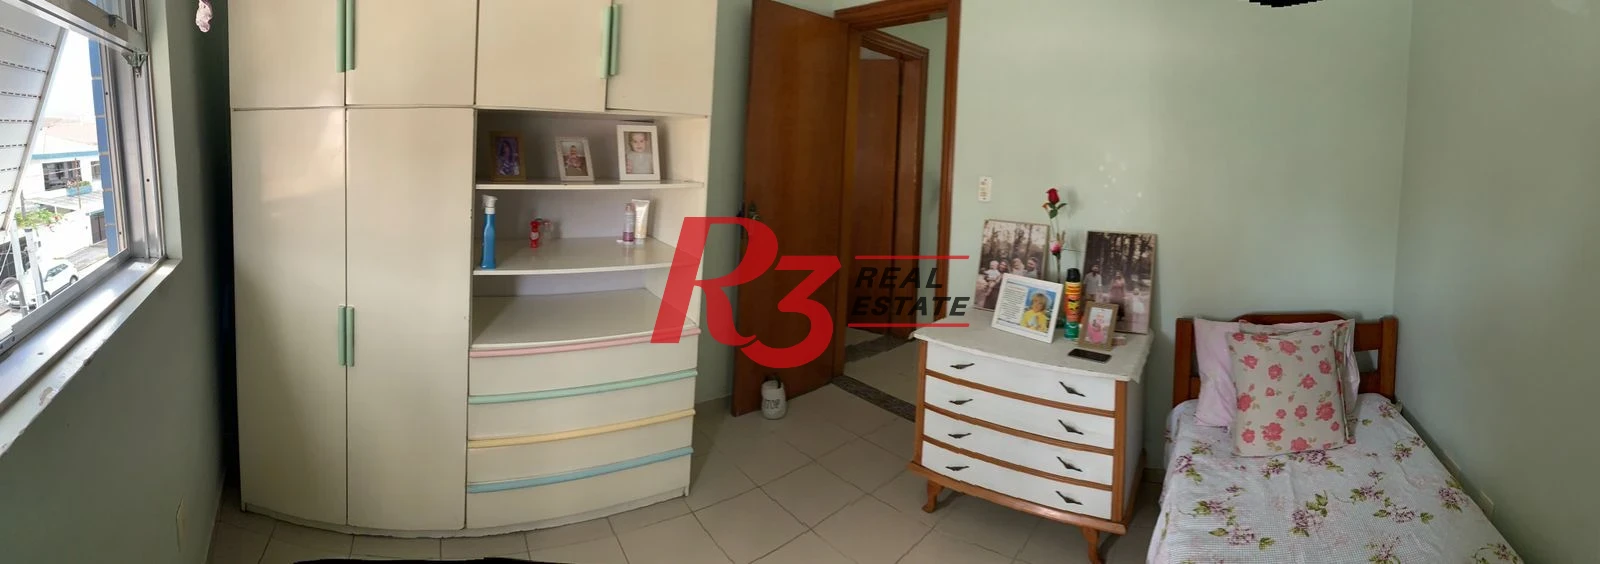 Casa com 3 dormitórios à venda, 230 m² - Aparecida - Santos/SP